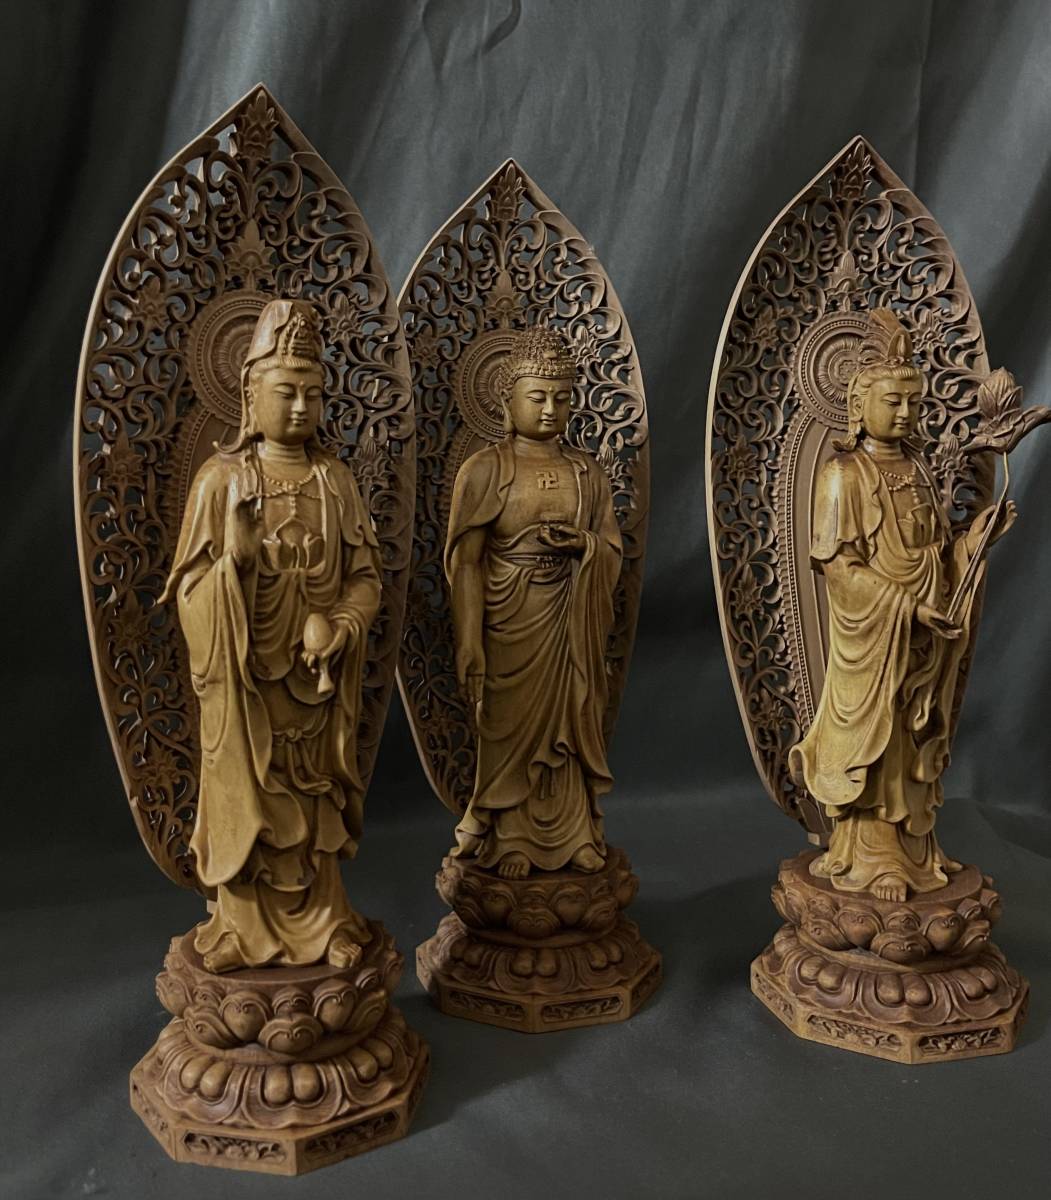 木彫り 仏像 阿弥陀三尊立像 財前彫刻 仏教工芸品 柘植材 仏師で仕上げ